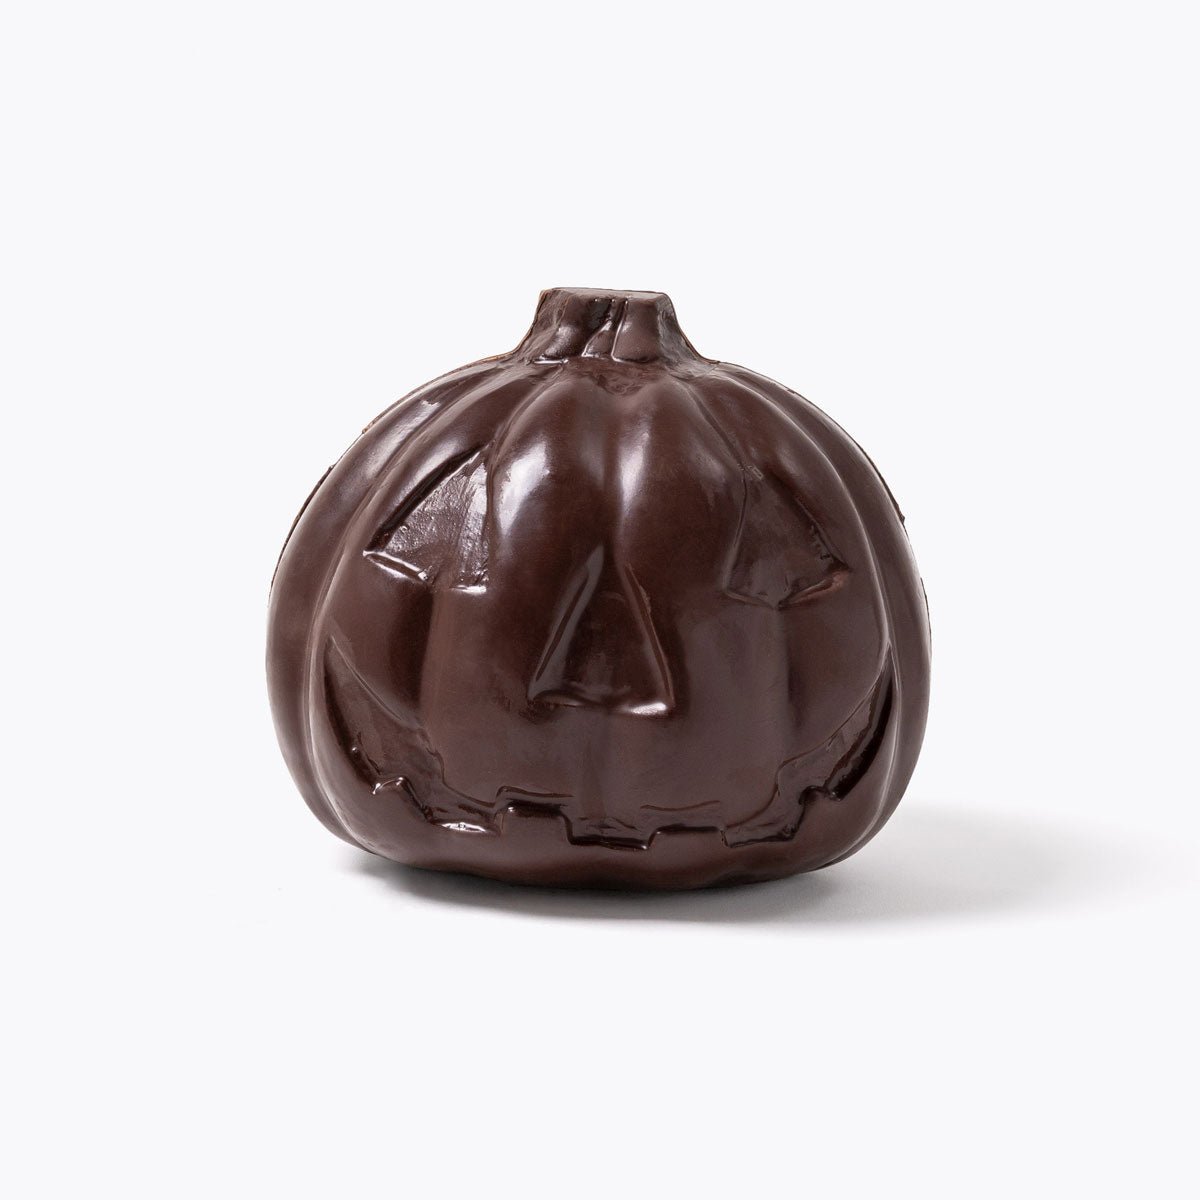 Calabaza Chocolate mediana - 550g - Bombonería Pons - Complementos